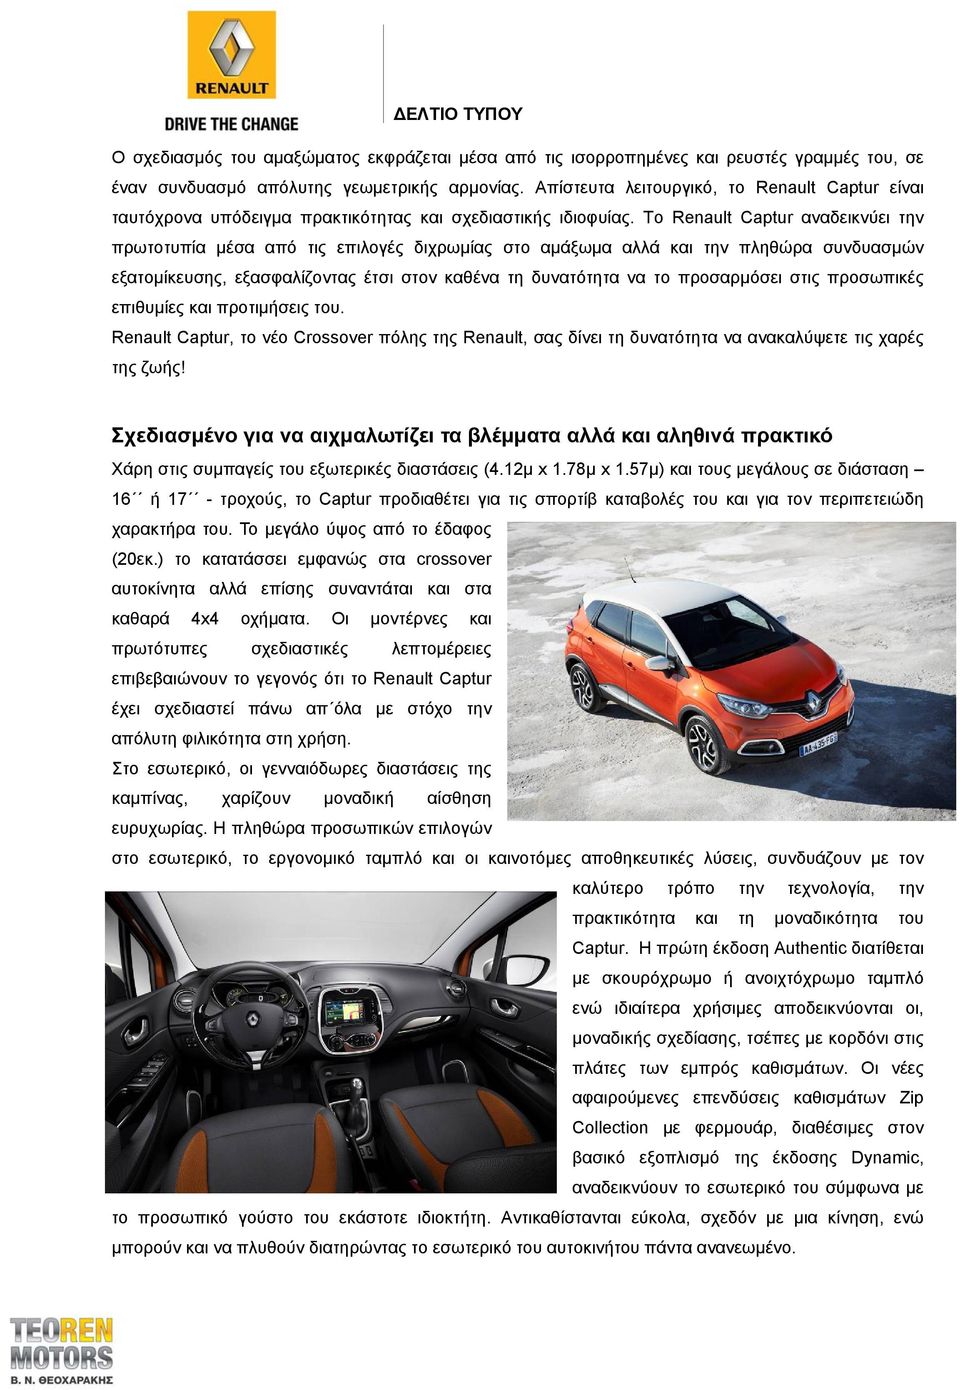 Το Renault Captur αναδεικνύει την πρωτοτυπία μέσα από τις επιλογές διχρωμίας στο αμάξωμα αλλά και την πληθώρα συνδυασμών εξατομίκευσης, εξασφαλίζοντας έτσι στον καθένα τη δυνατότητα να το προσαρμόσει